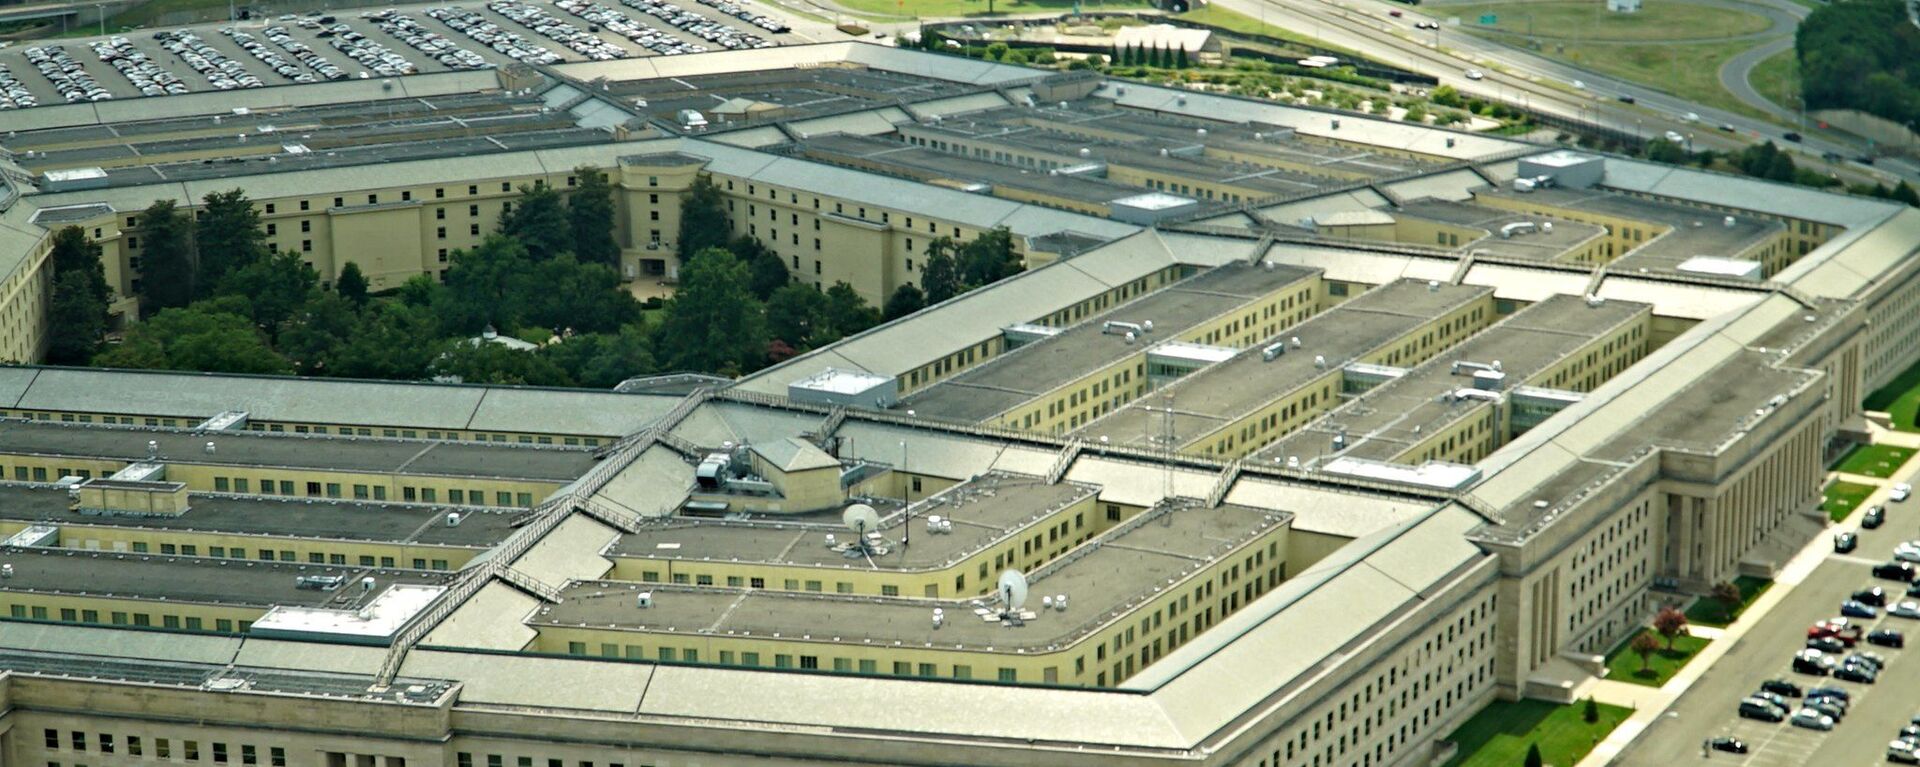 Здание Пентагона, Вашингтон, США - Sputnik Lietuva, 1920, 06.04.2021